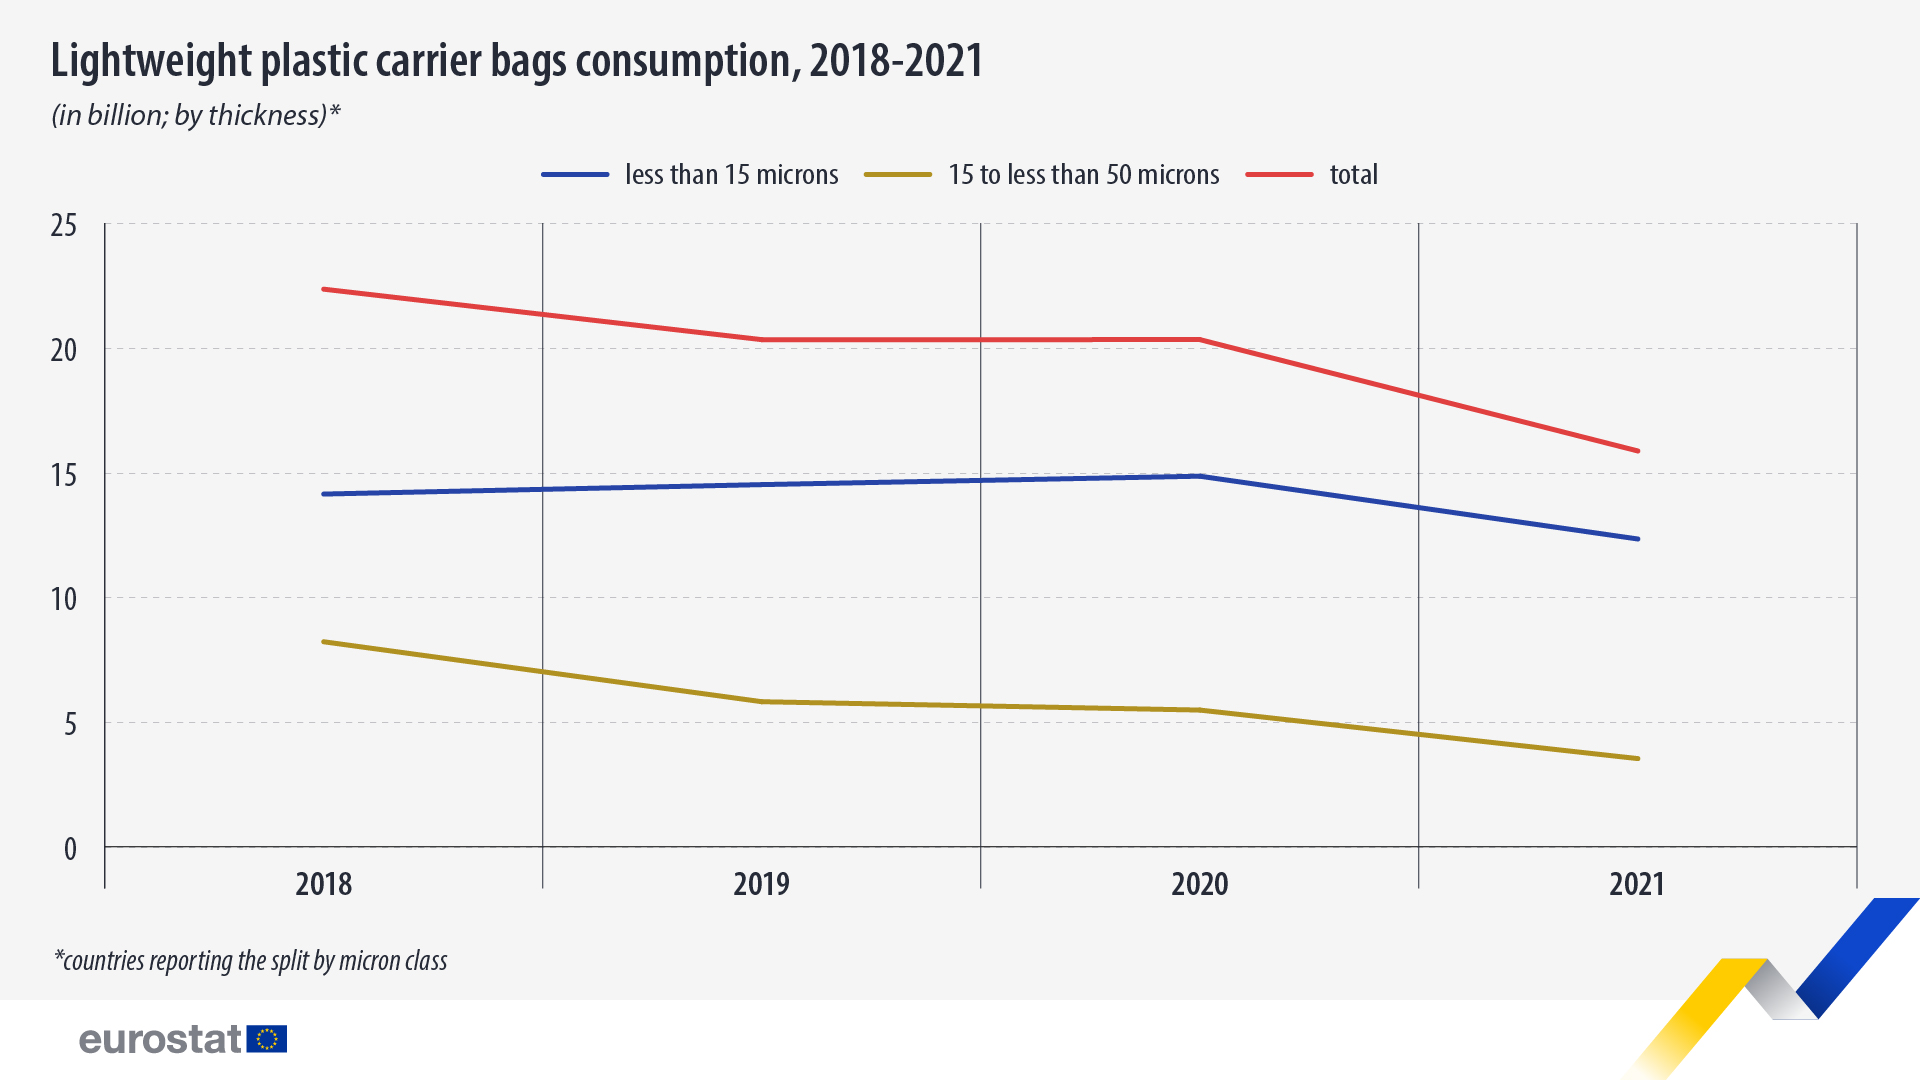 Grafic liniar: consumul de pungi de plastic ușoare, în milioane, 2018-2021